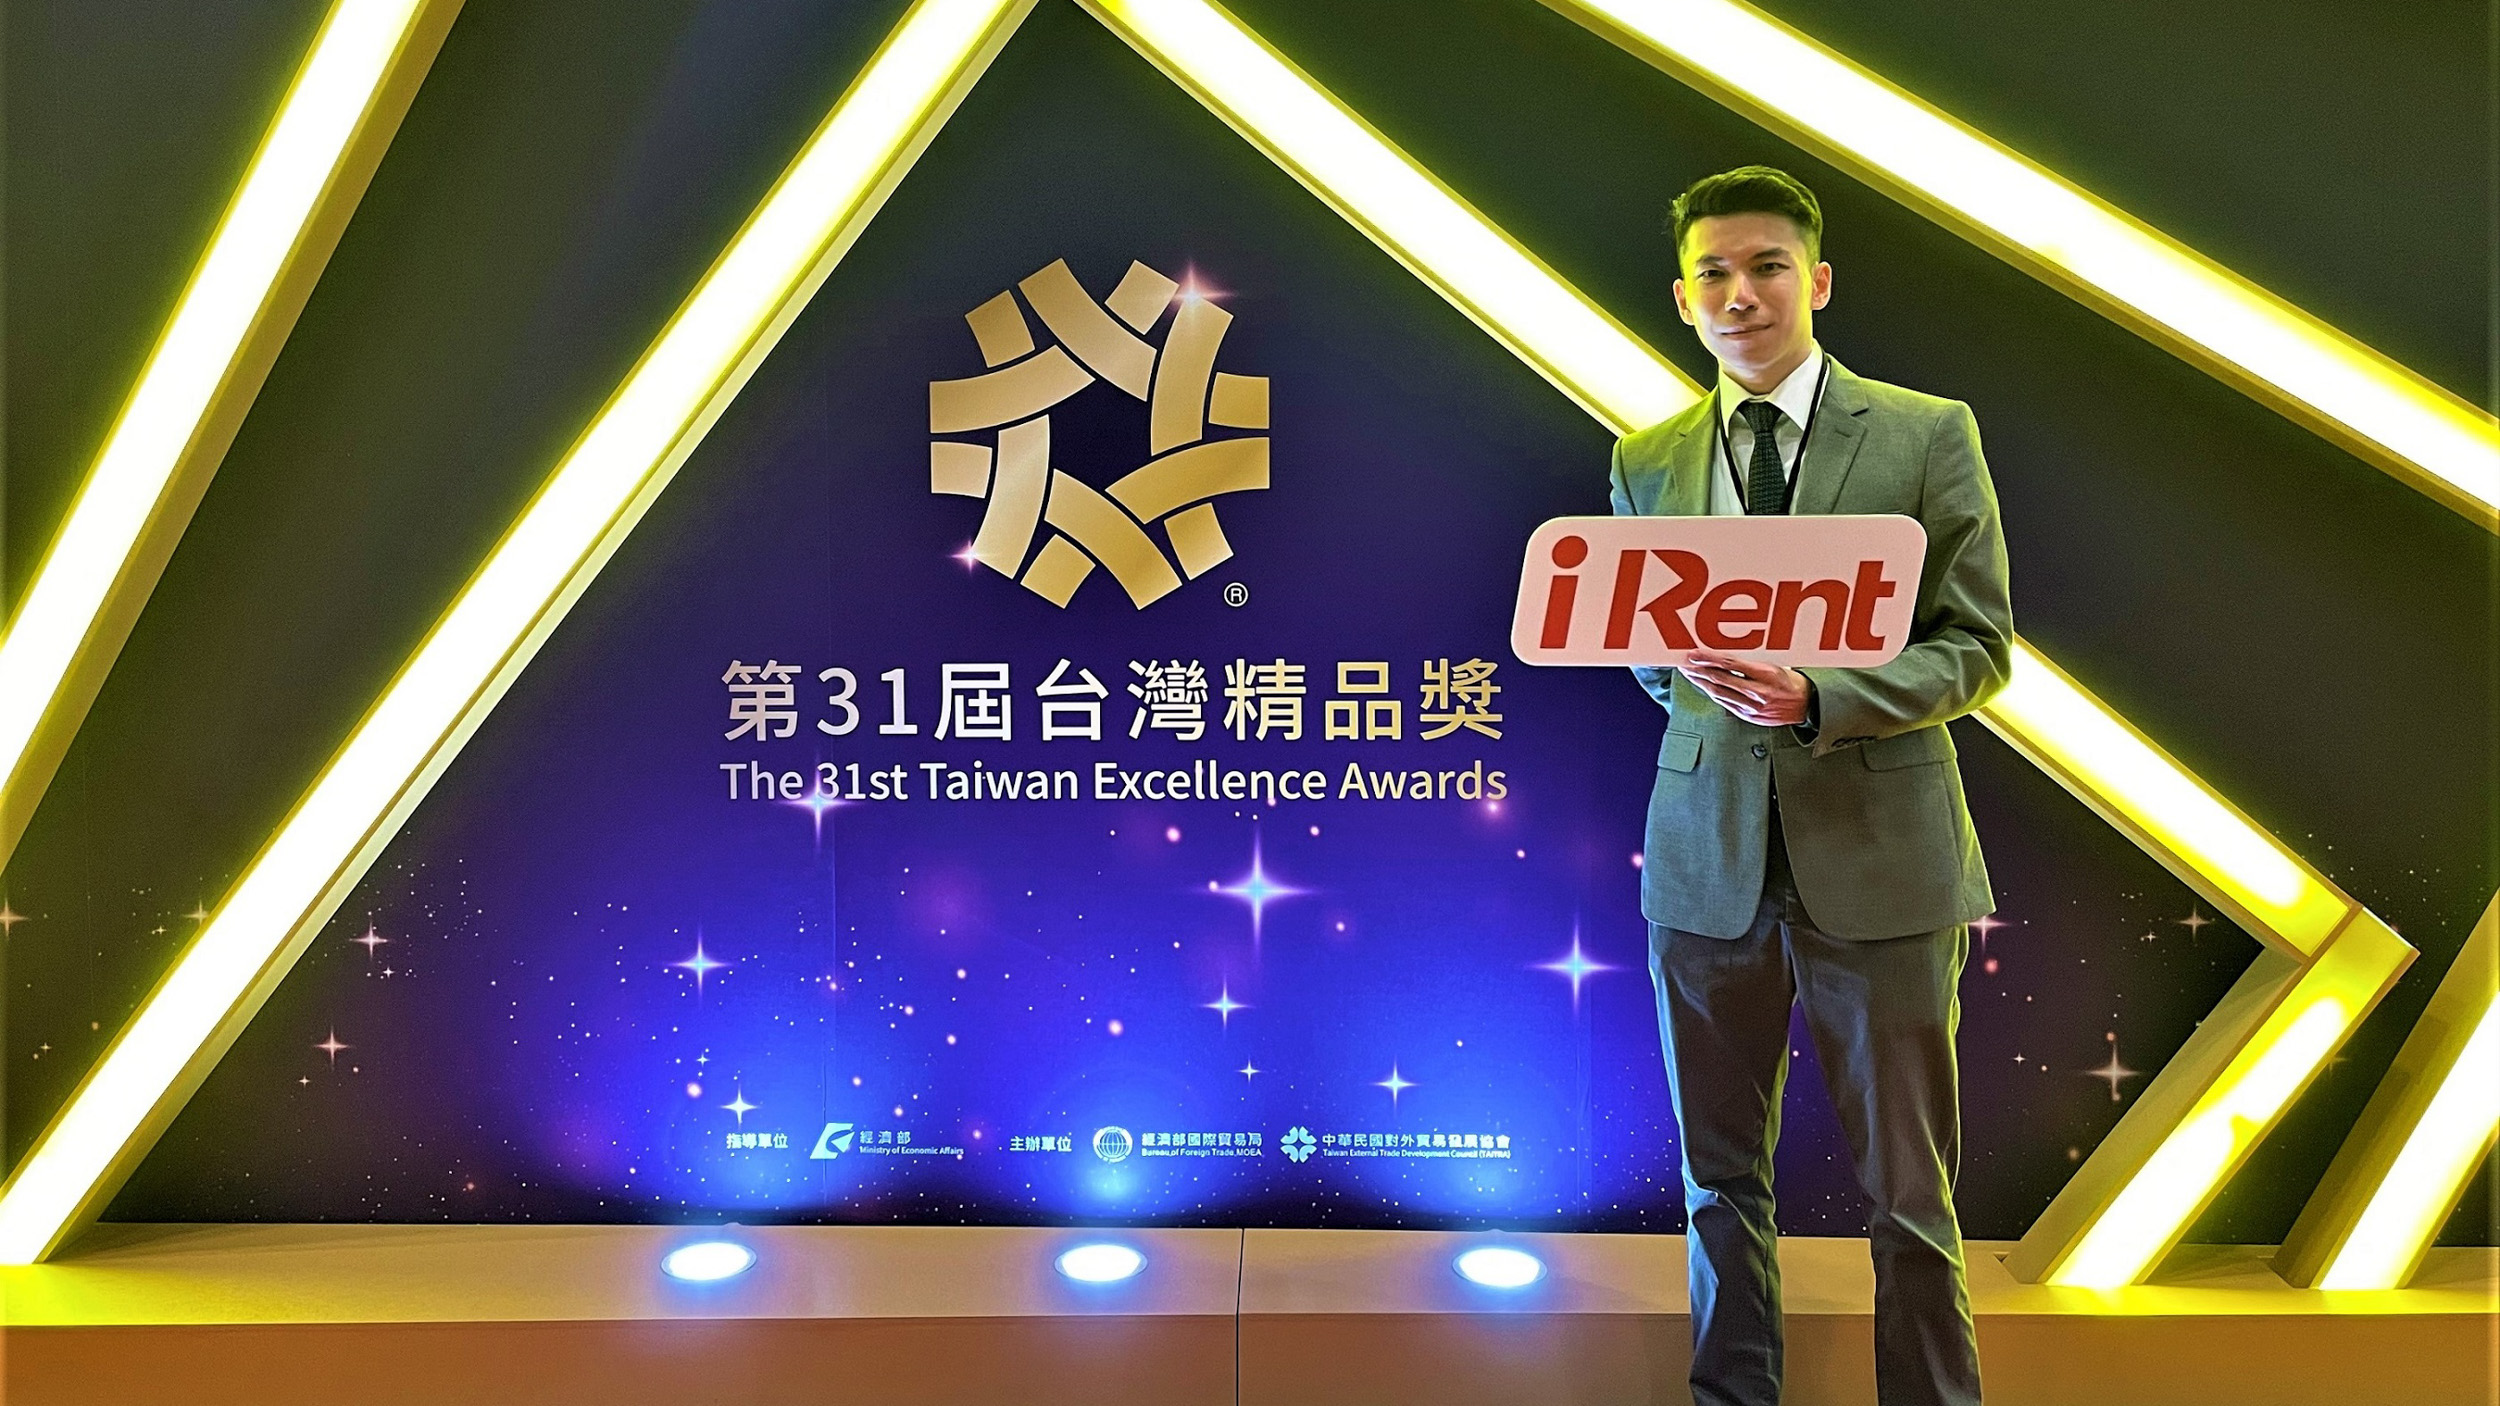 ▲ 打造共享移動新標竿 iRent 獲 31 屆台灣精品獎